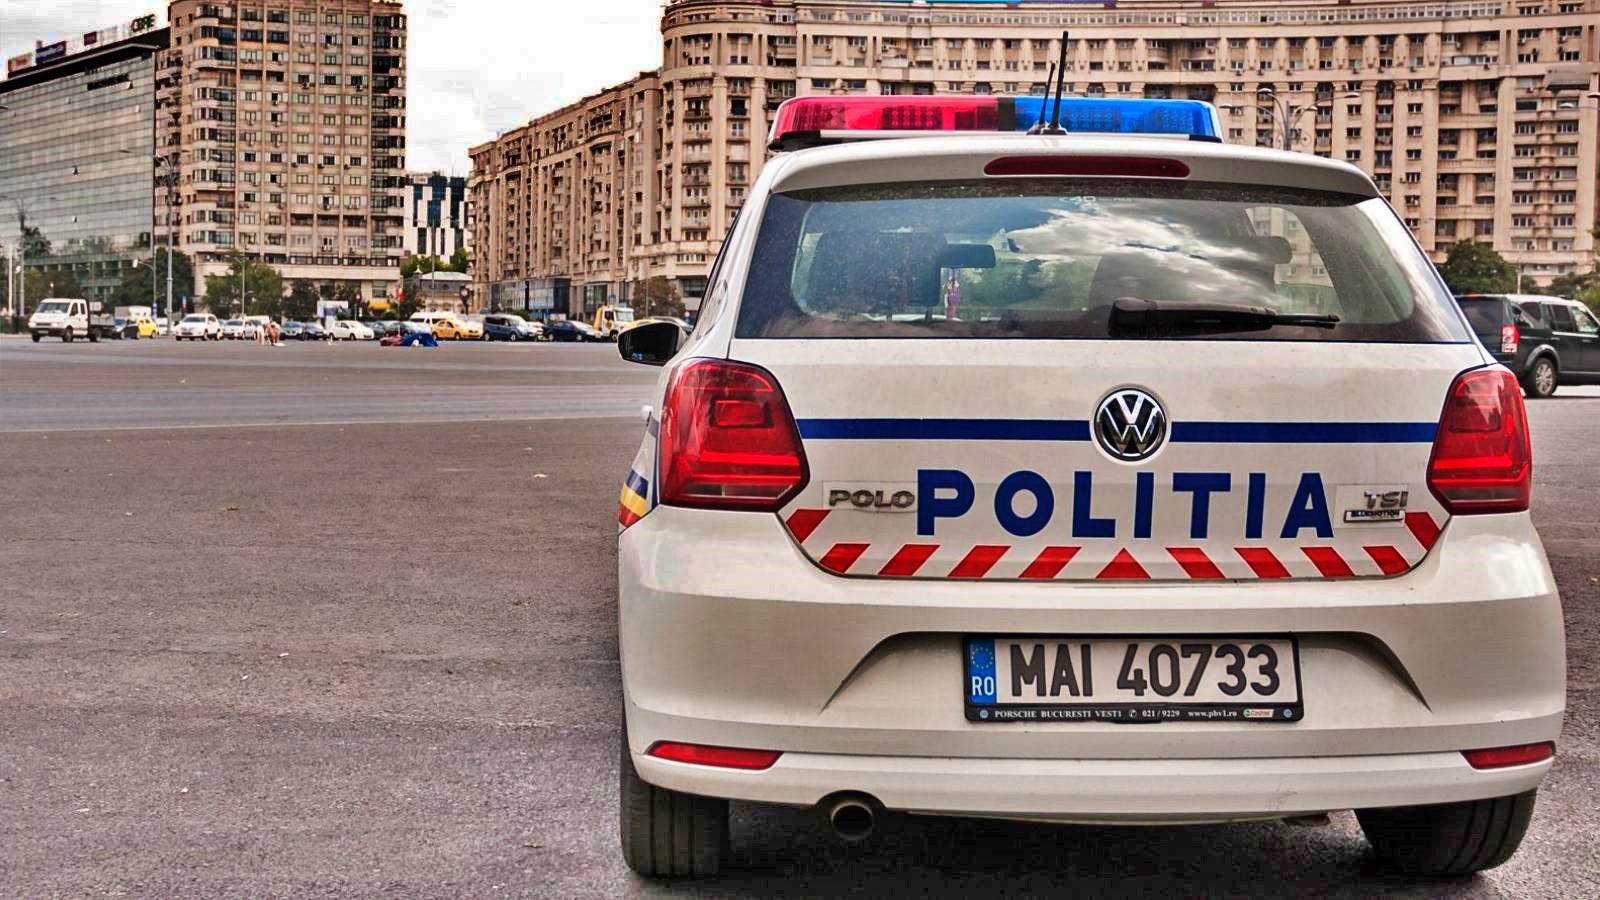 La police roumaine inflige une amende pour franchissement irrégulier de la rue